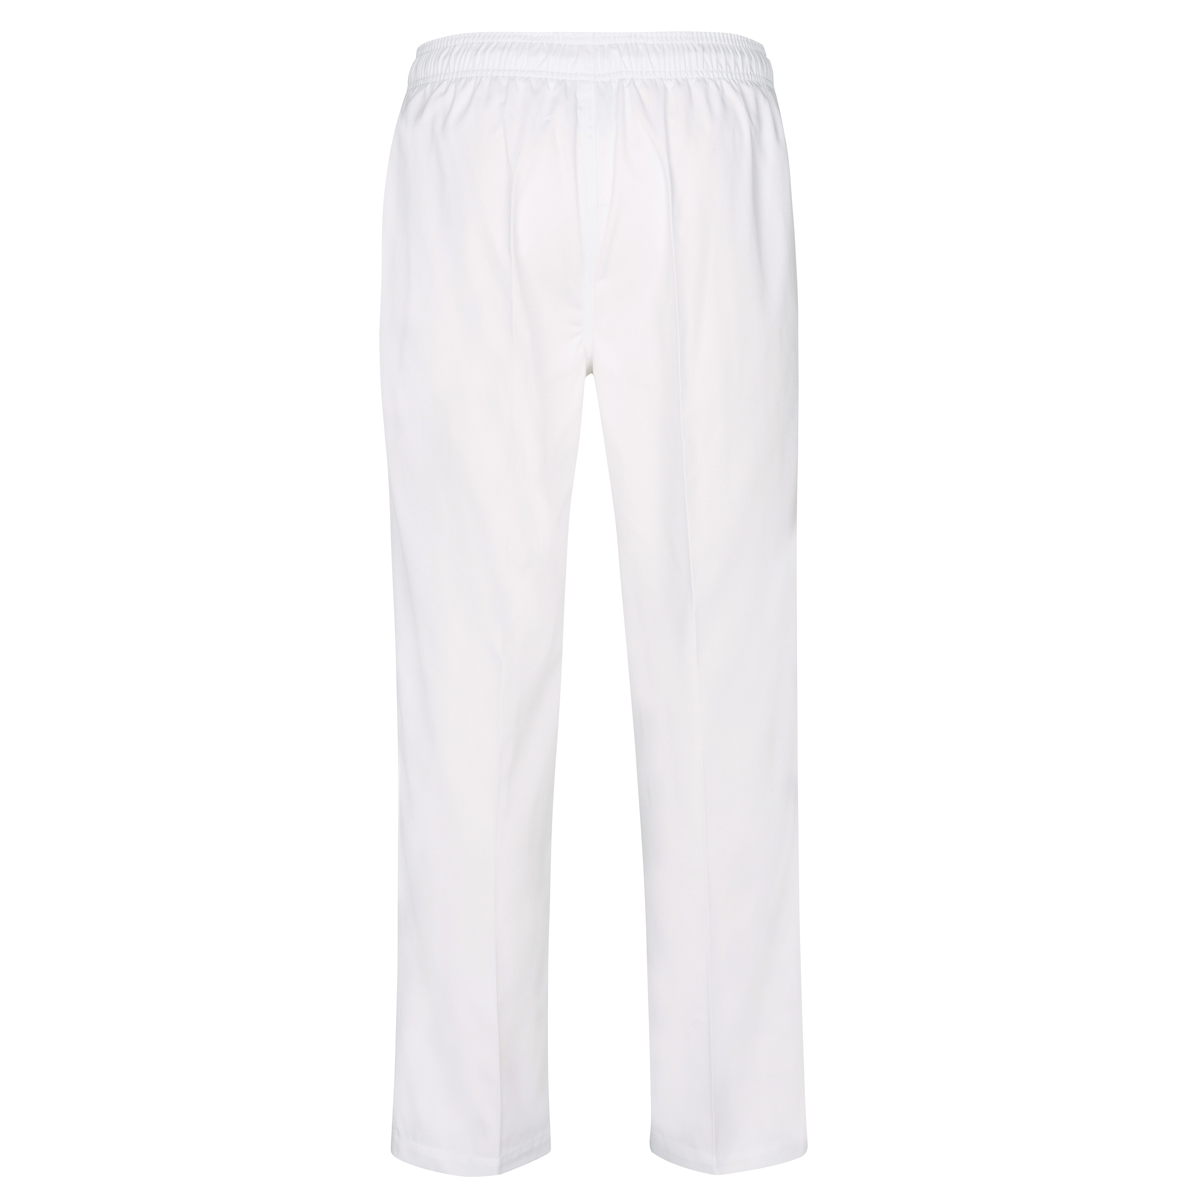 Elasticated no pocket pants - White